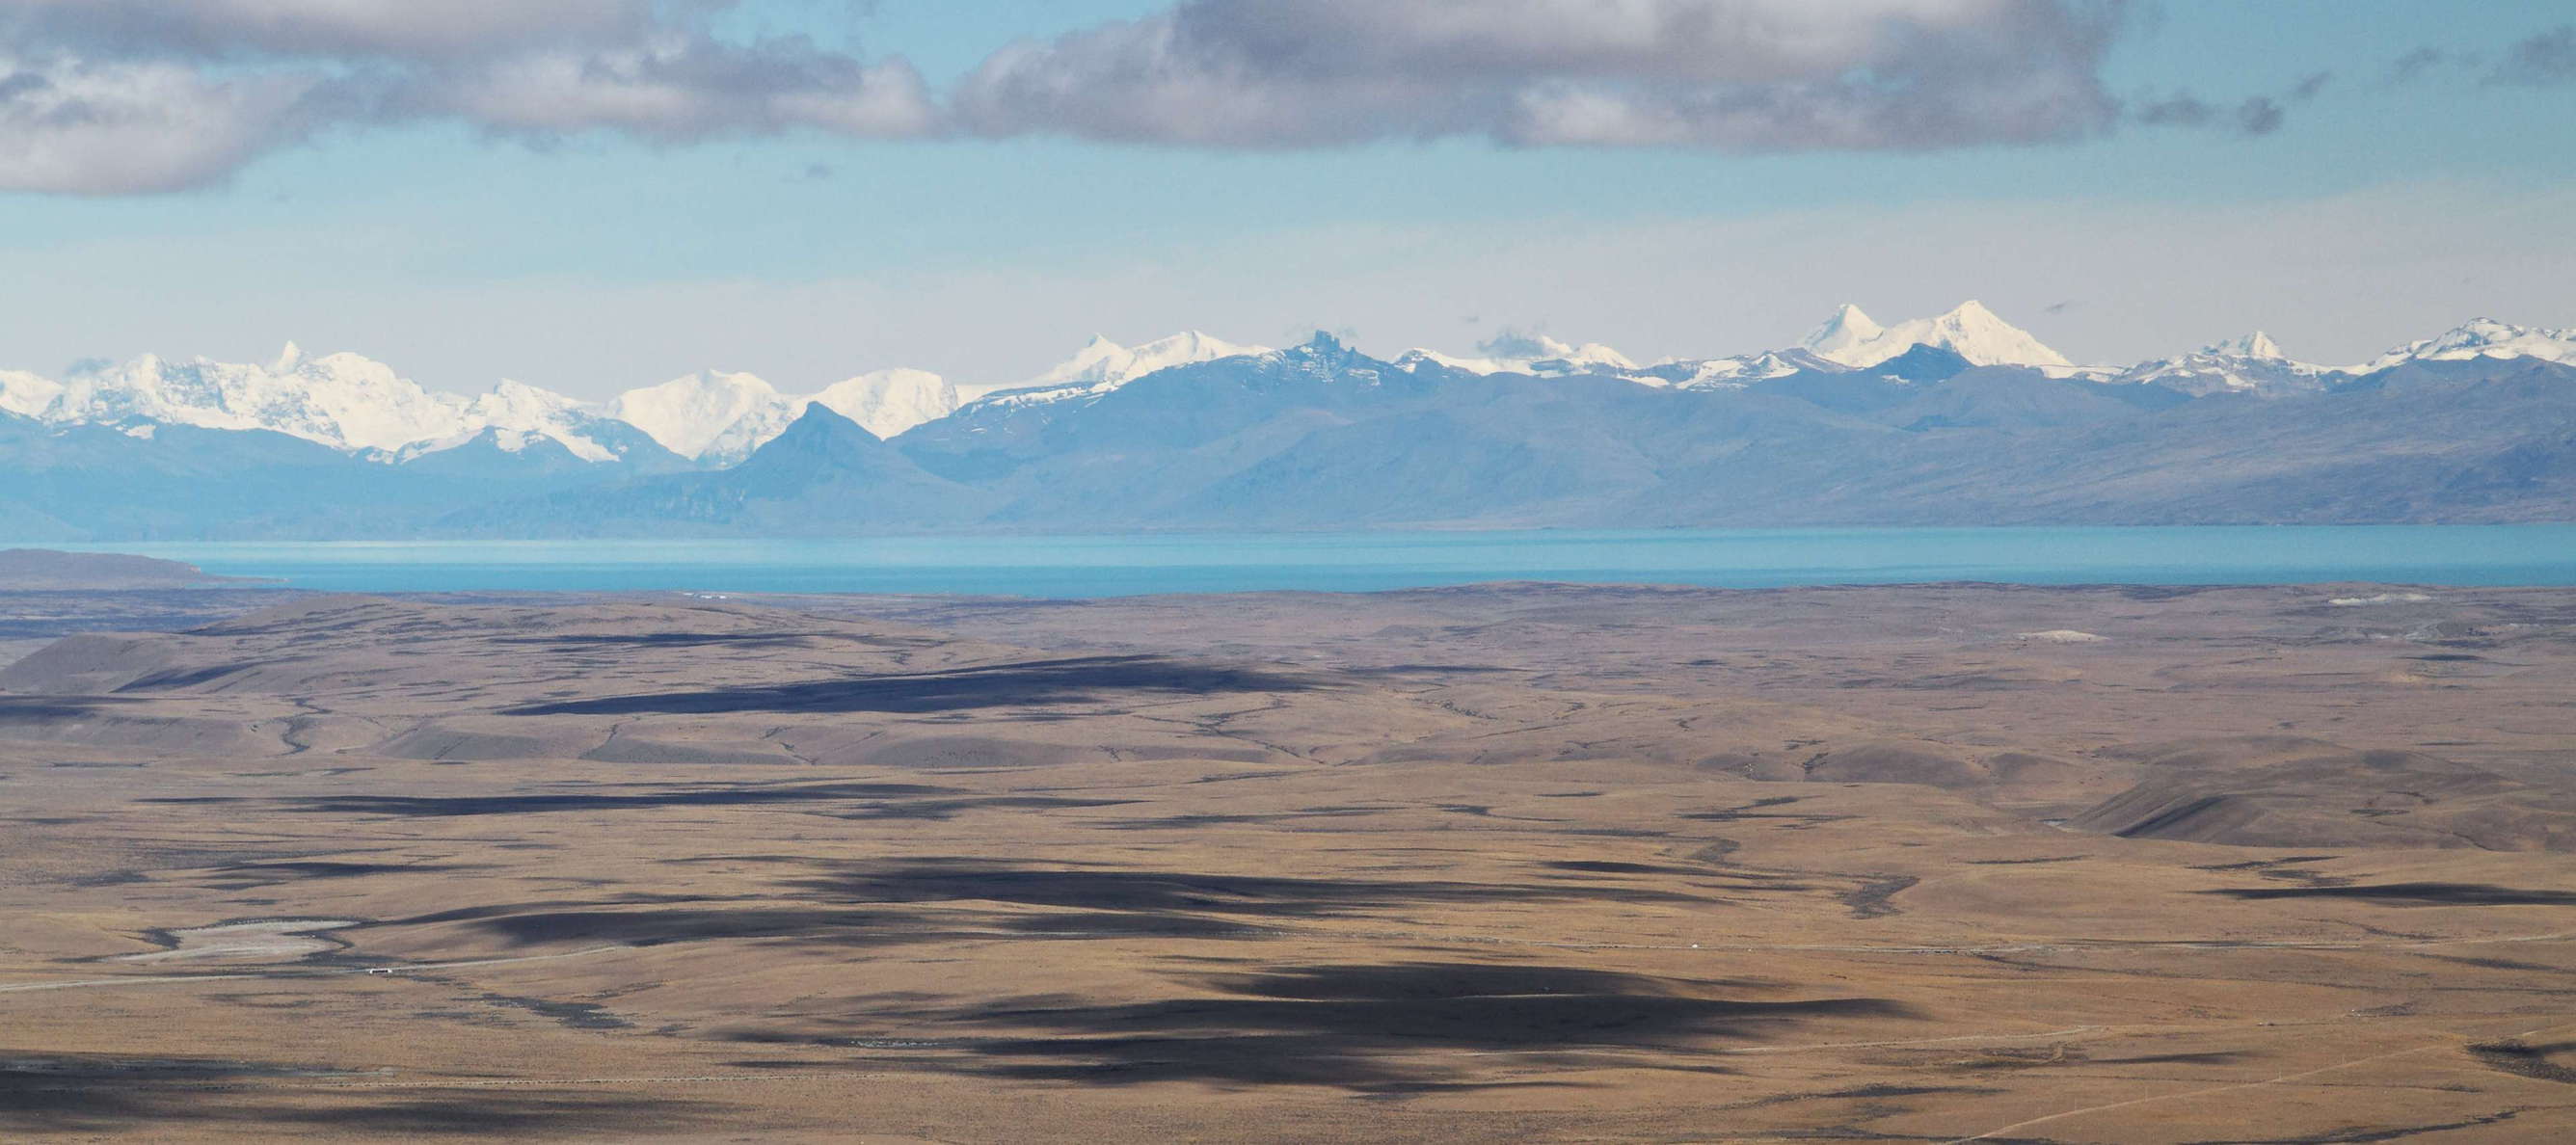 Lago Argentino and Cordillera